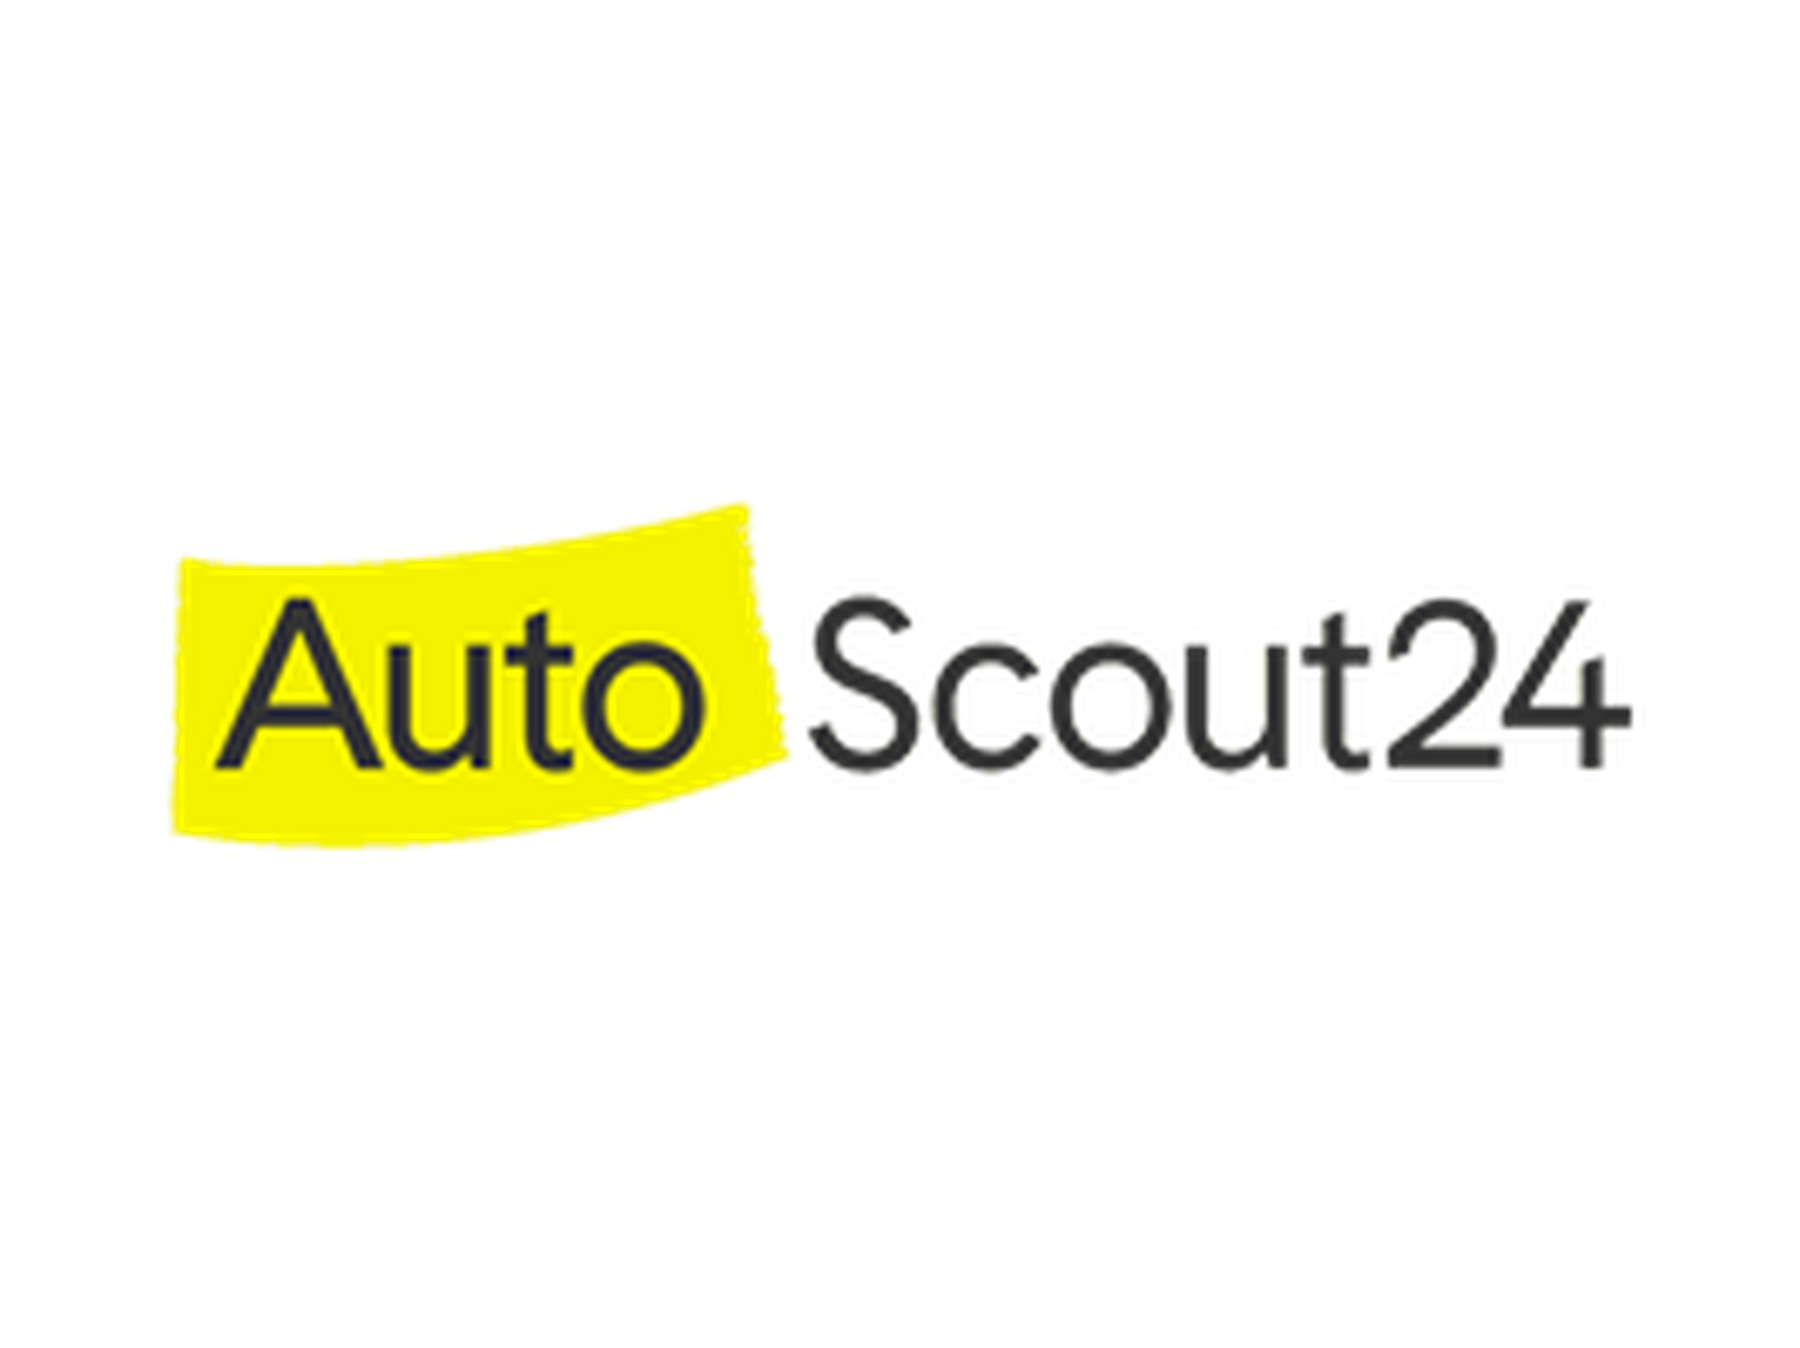 AutoScout24 Gutscheincode